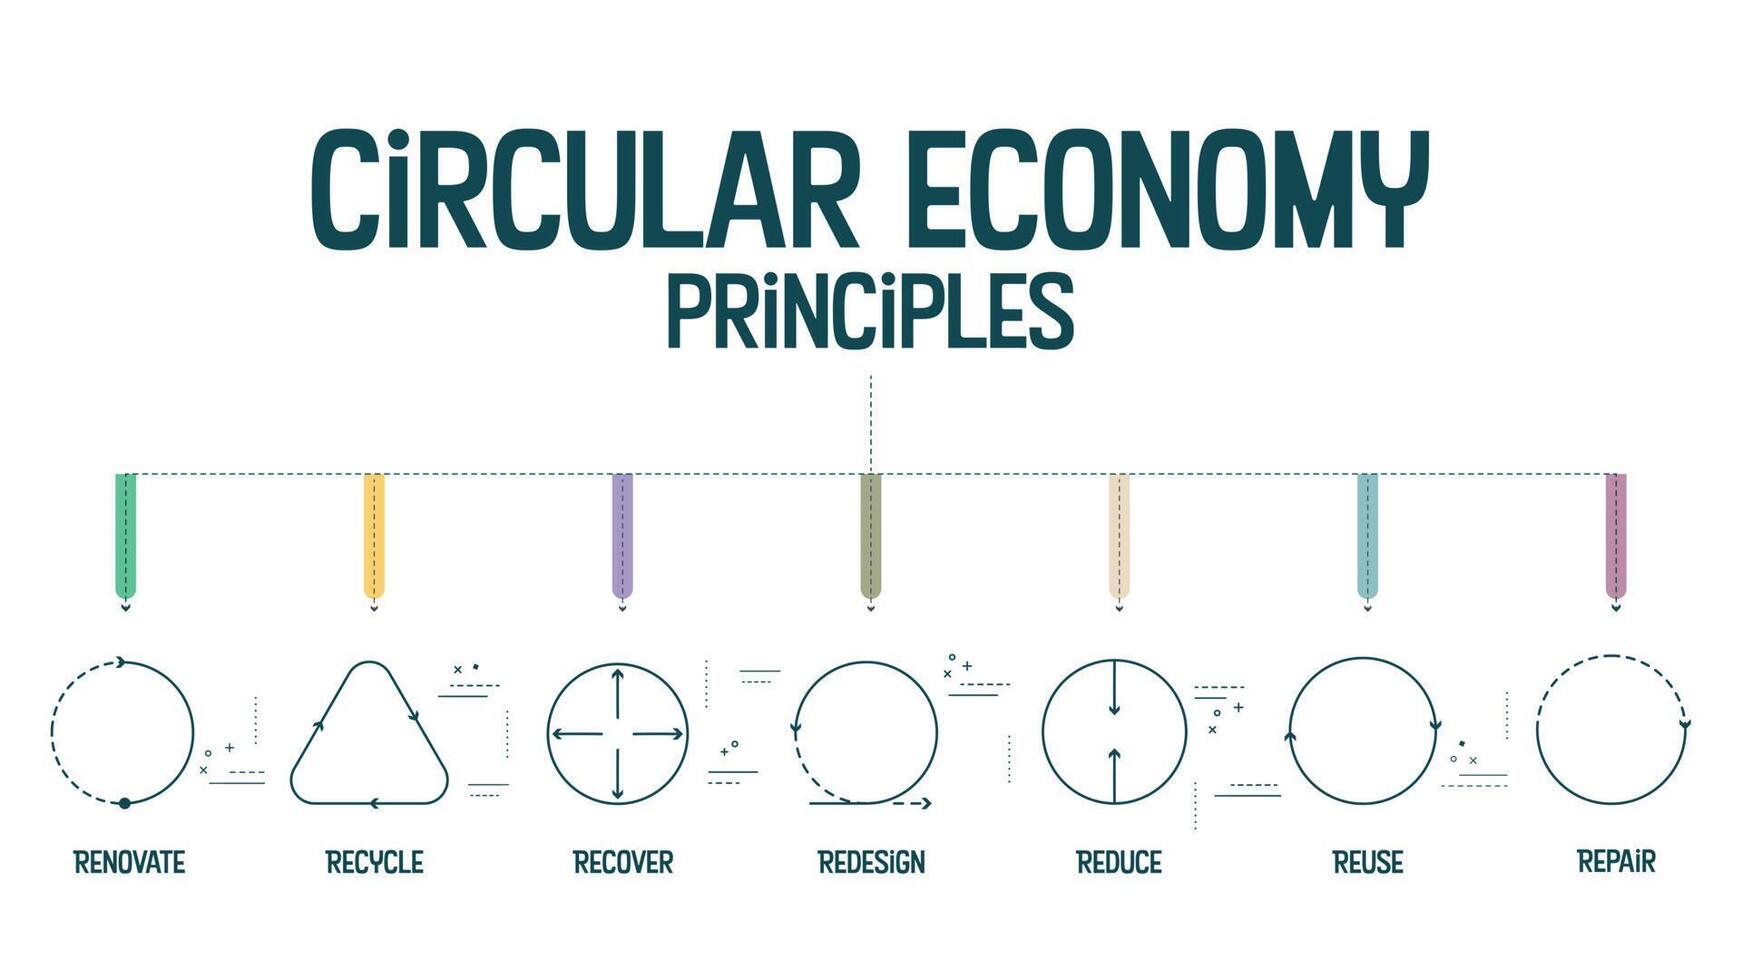 7r circular economia princípios conceito para econômico sustentabilidade do Produção e consumo tem 7 passos para analisar tal Como reduzir, reciclar, recuperar, reparar, redesenhar, reuso e renovar. vetor. vetor